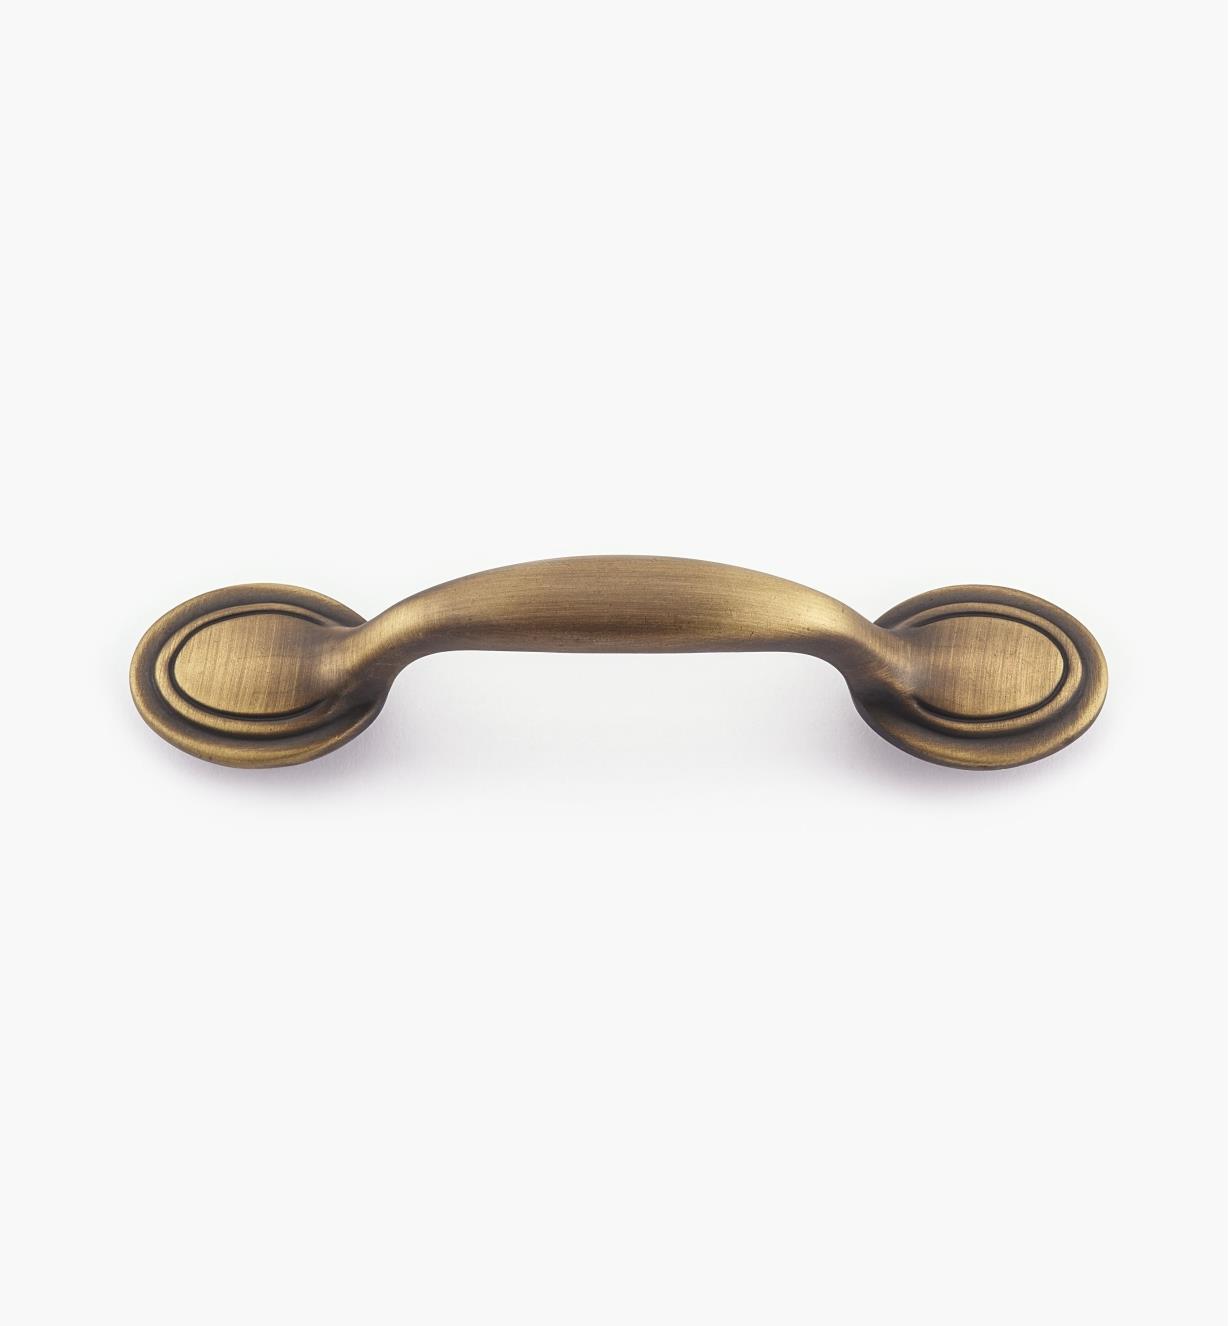 01W0610 - 3" Antique Brass Handle